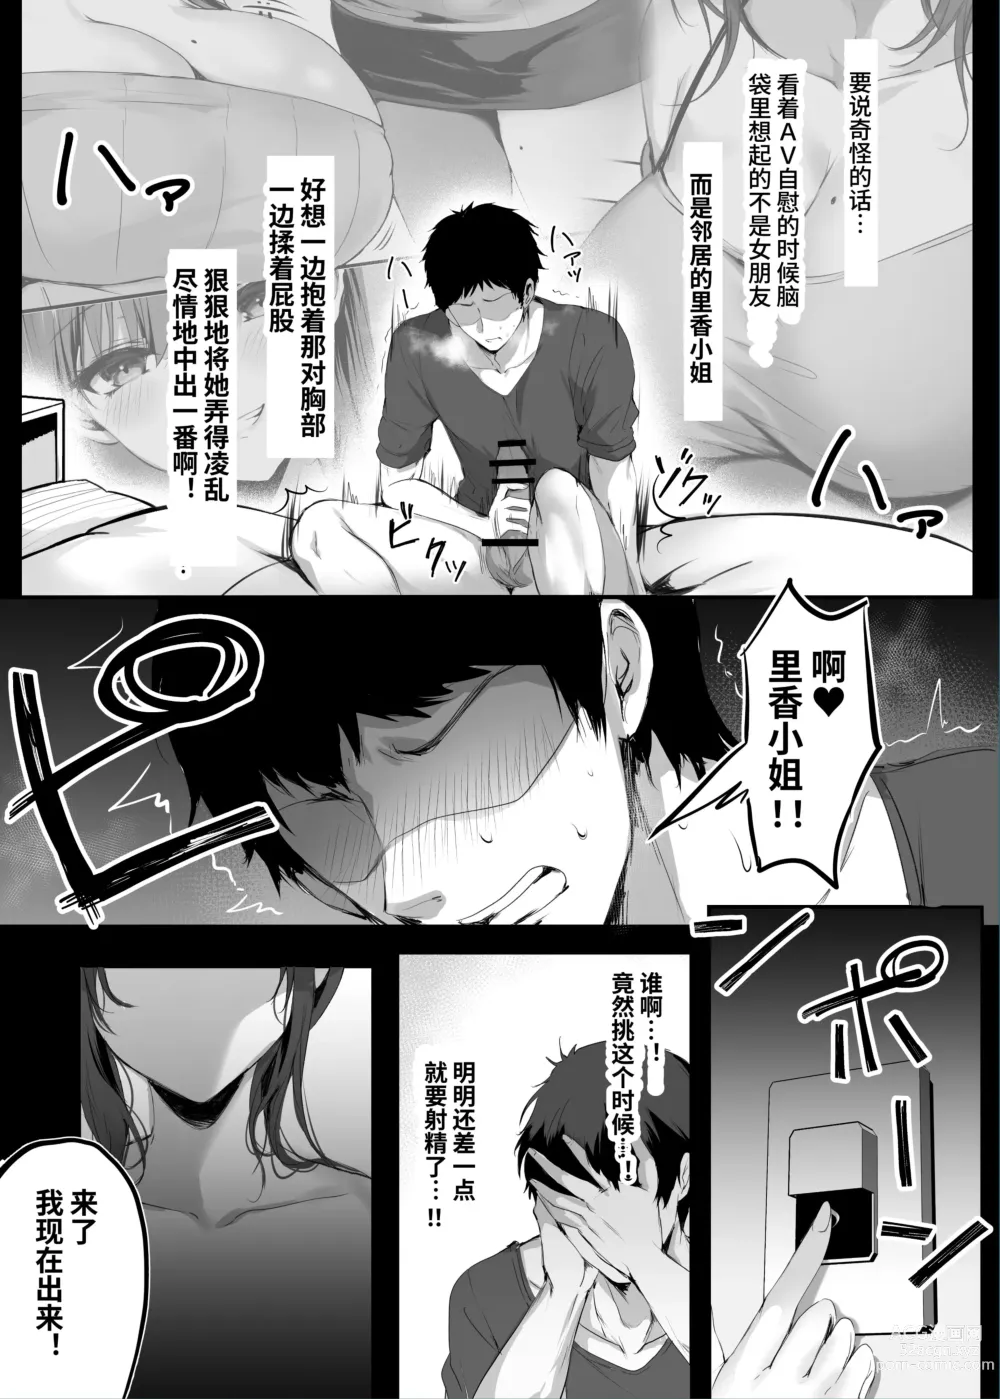 Page 12 of doujinshi Numaru.